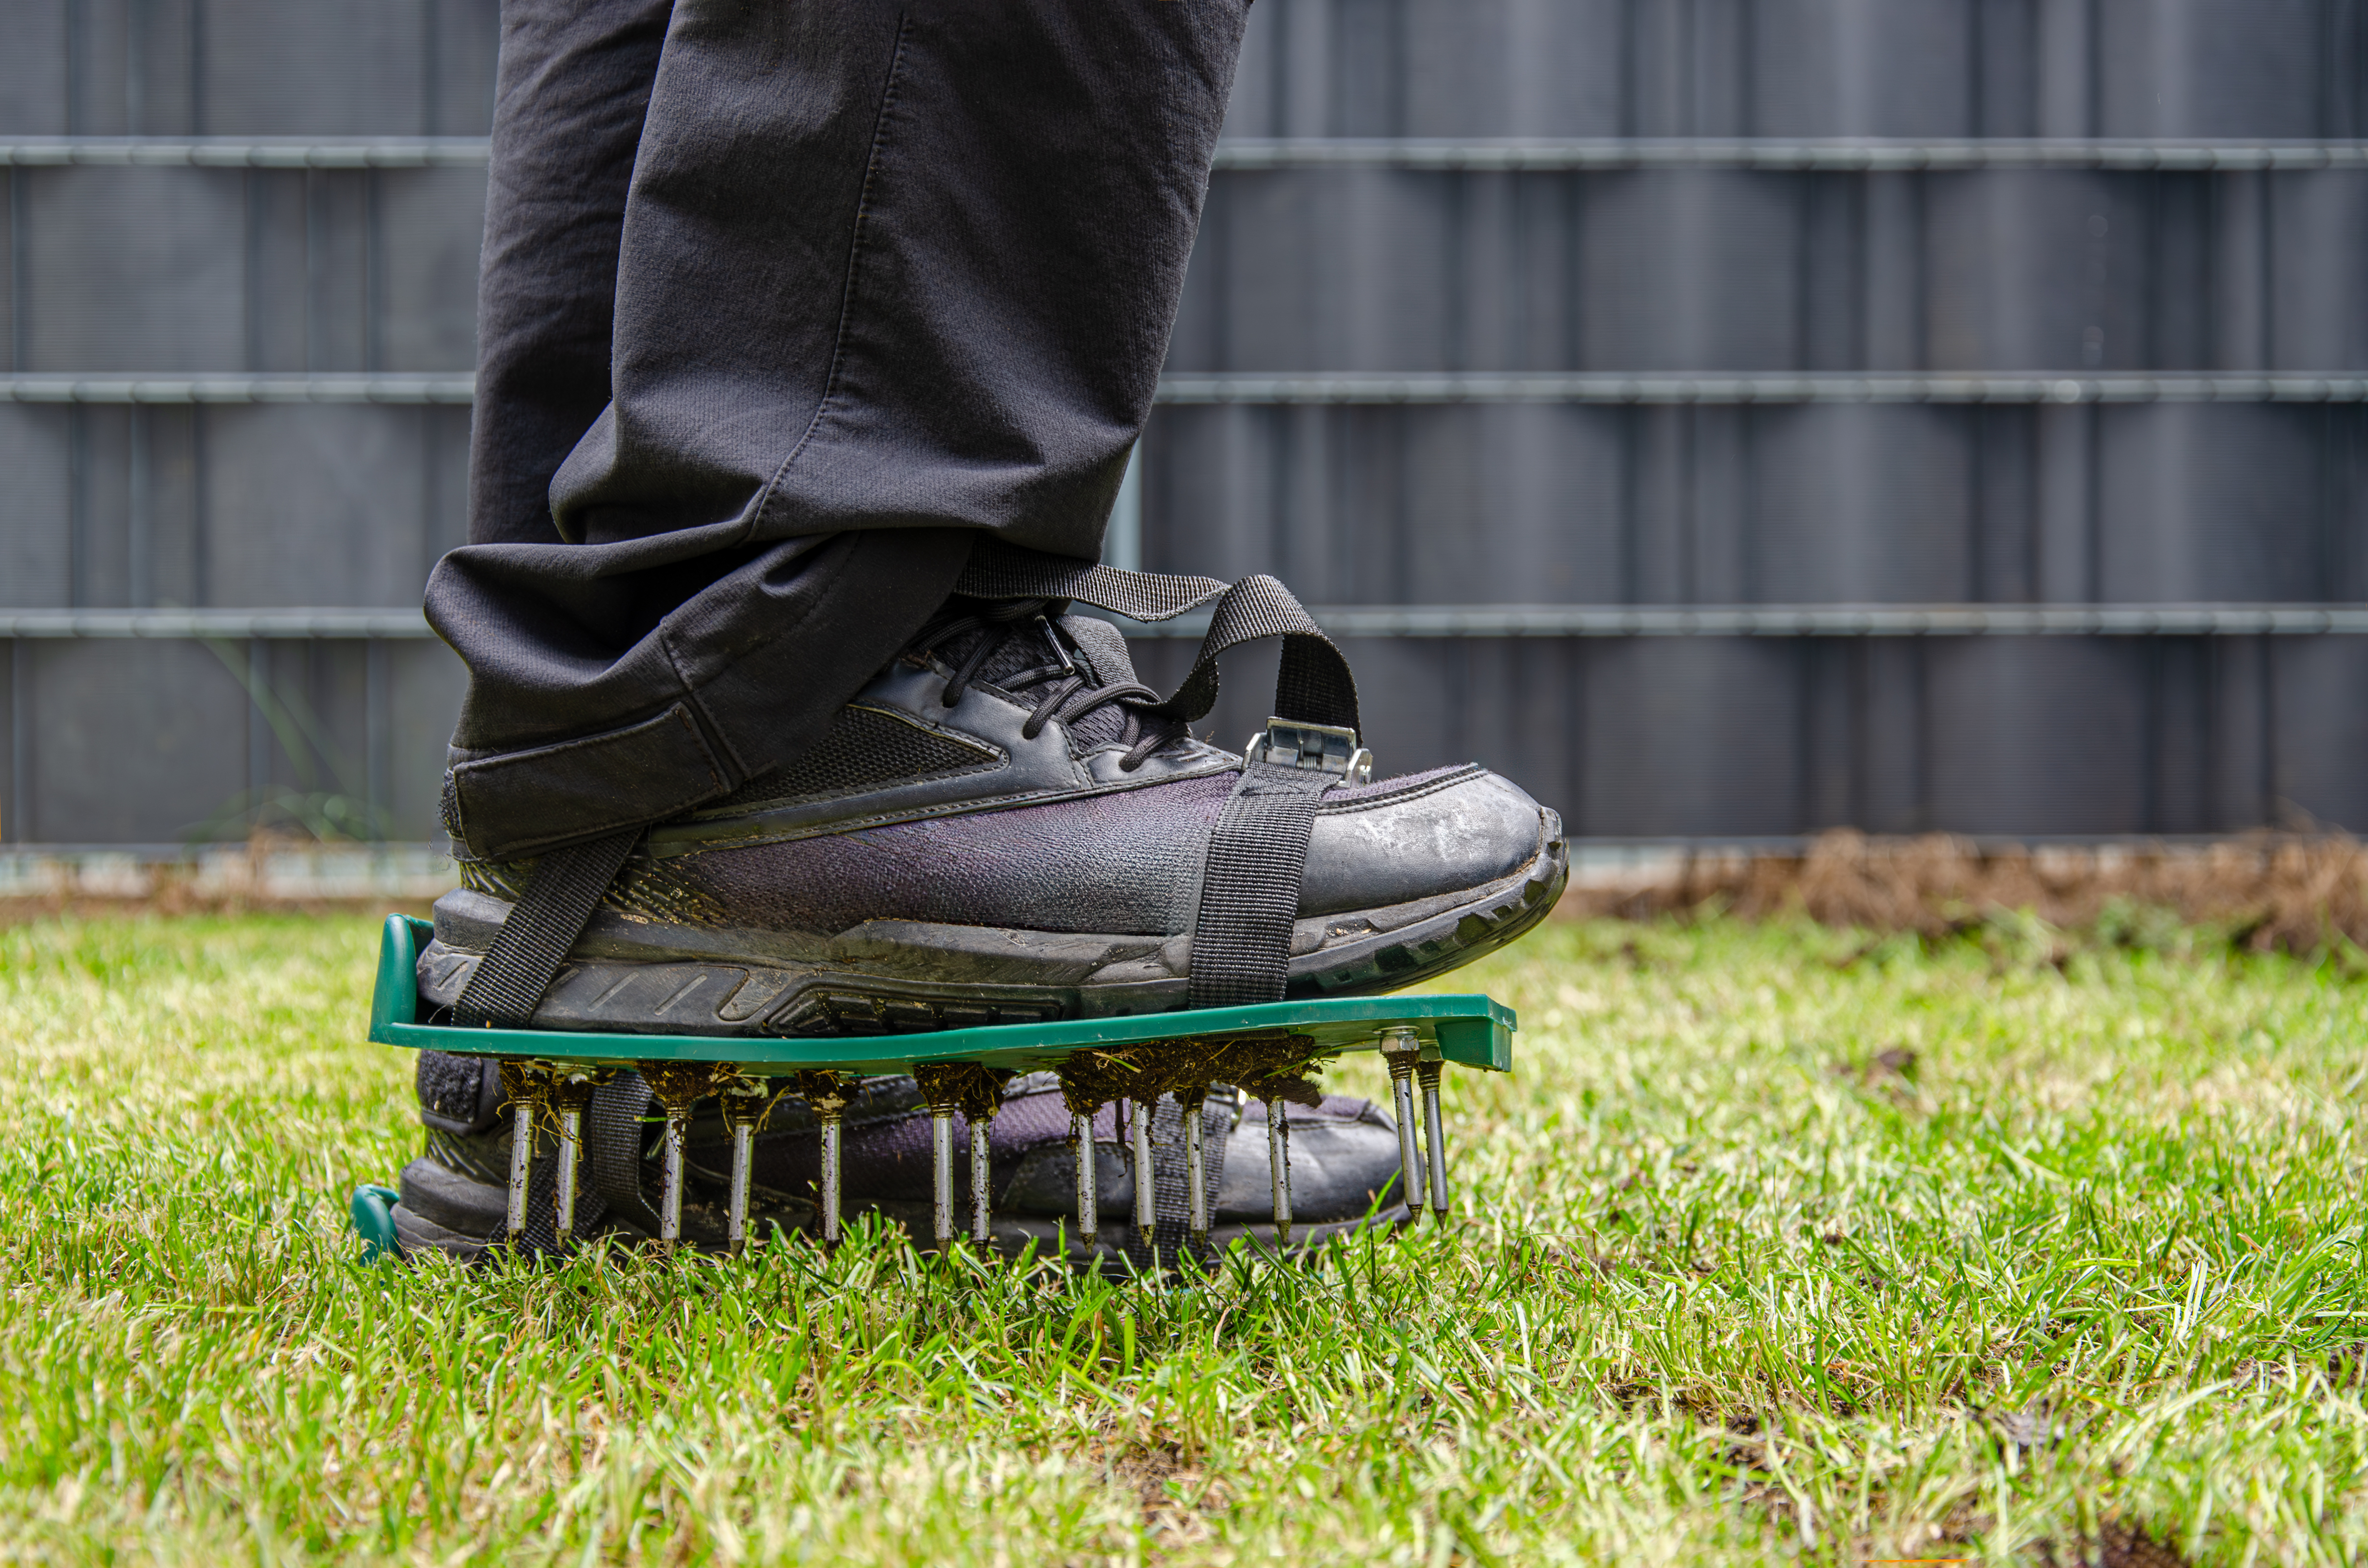 Les pros notent aussi qu’aérer sa pelouse avec des chaussures DIY n’est pas très efficace